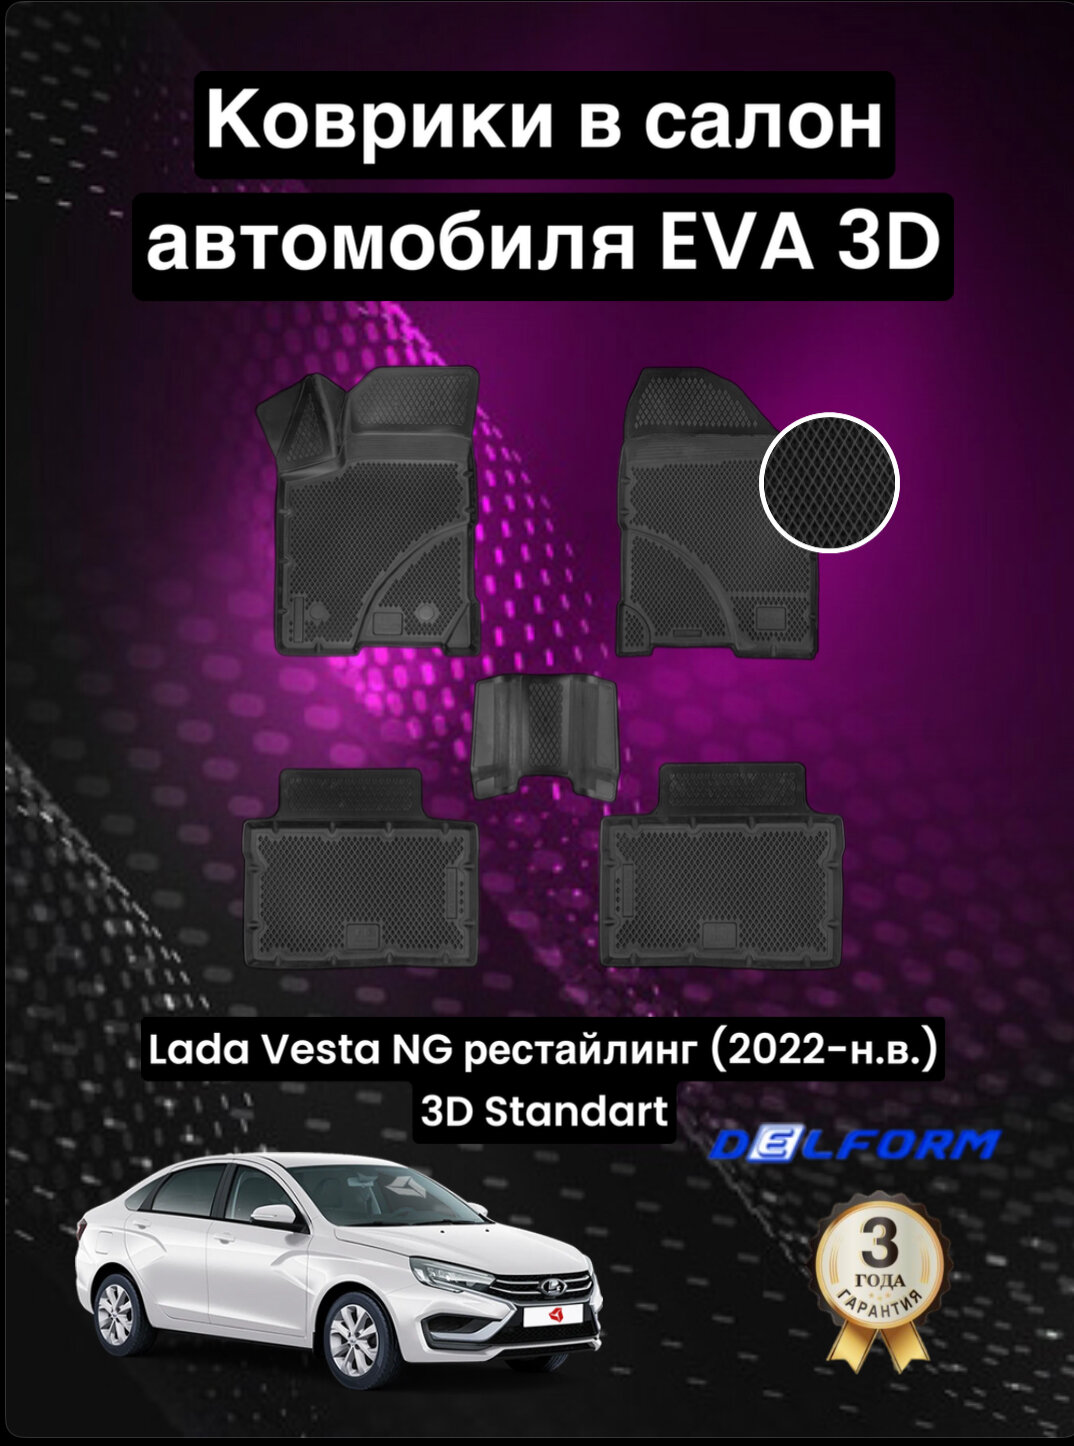 Эва/Eva Ева коврики c бортами Лада Веста НГ рестайлинг (2022-) /Lada Vesta NG (2022-) DELFORM 3D Standart ("EVA 3D") cалон